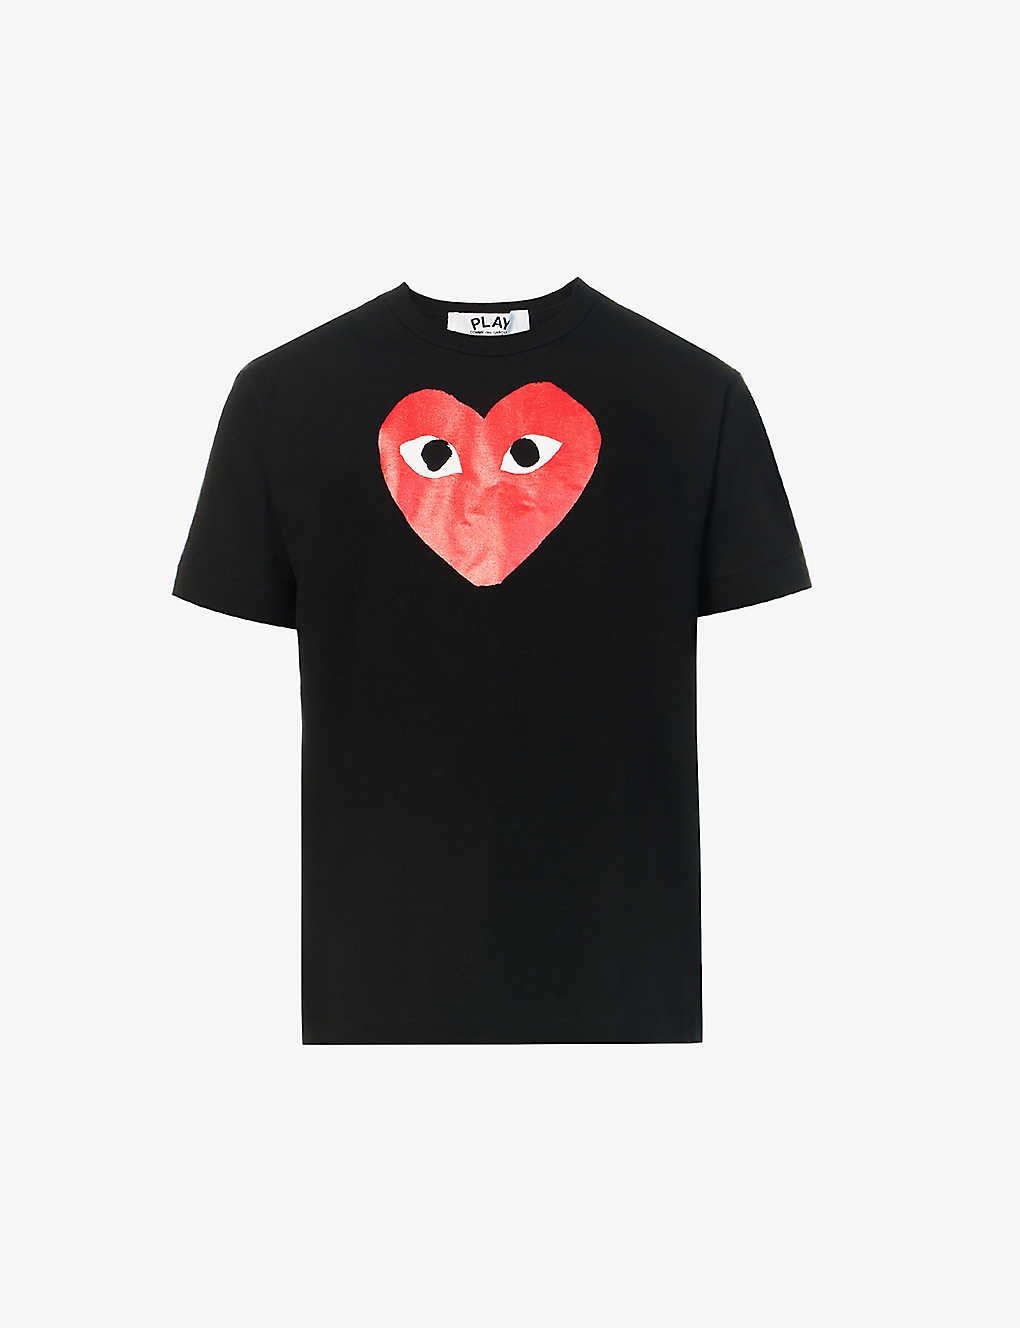 Shop Comme Des Garçons Play Comme Des Garcons Play Men's Black Play Heart Cotton T-shirt